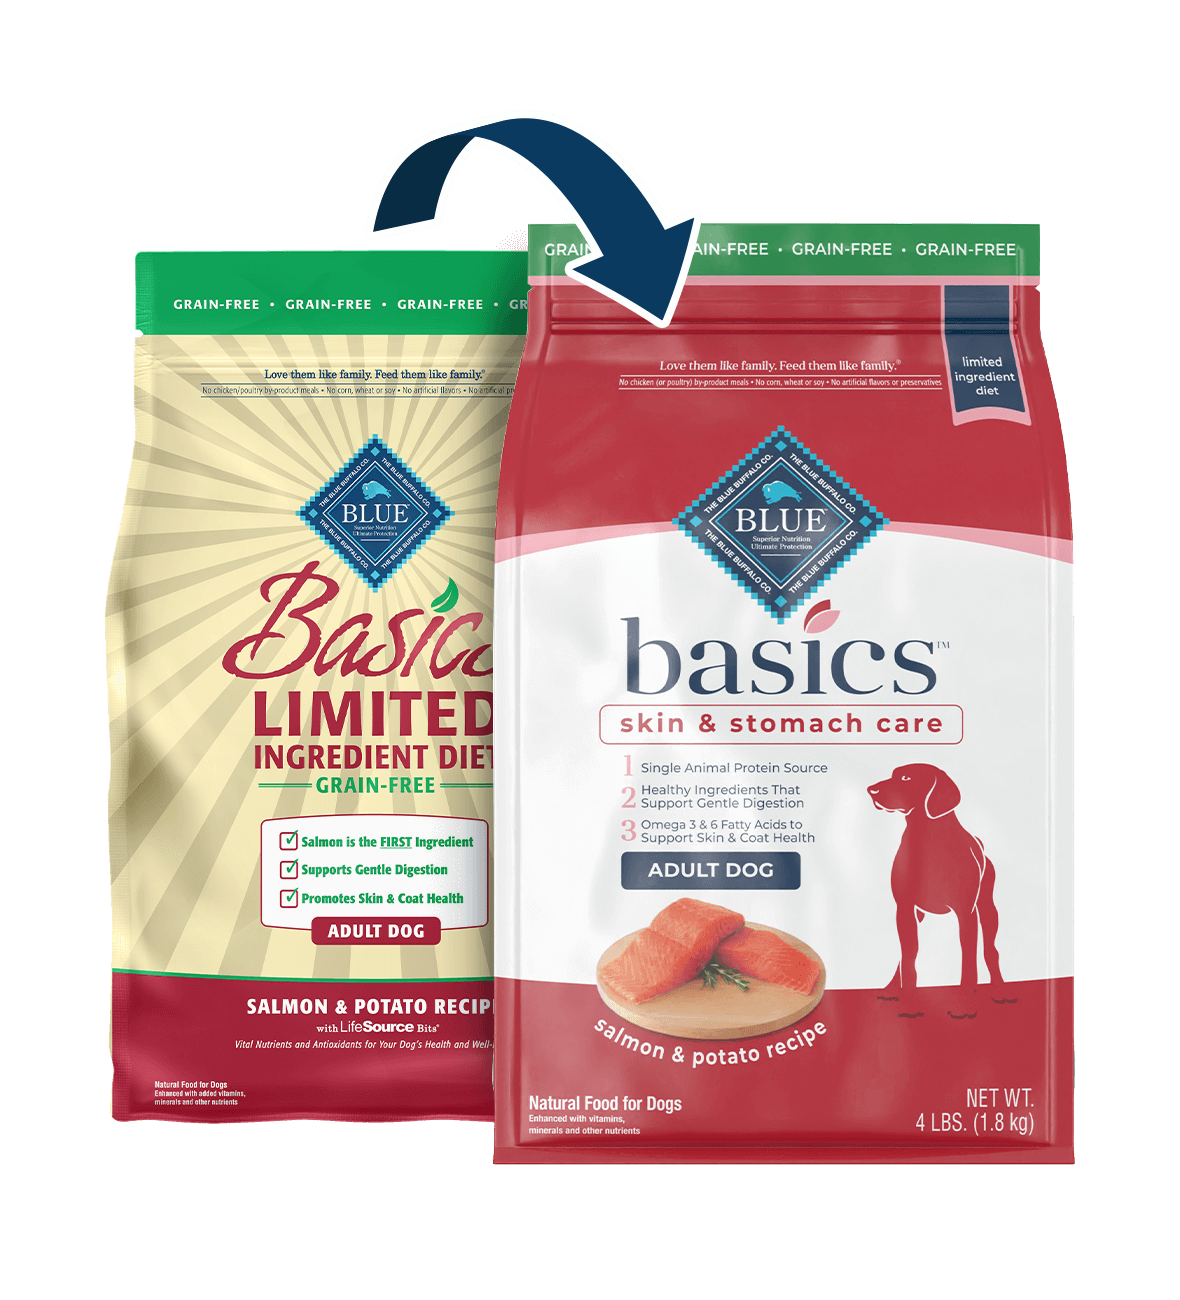 bag of Basics dog food